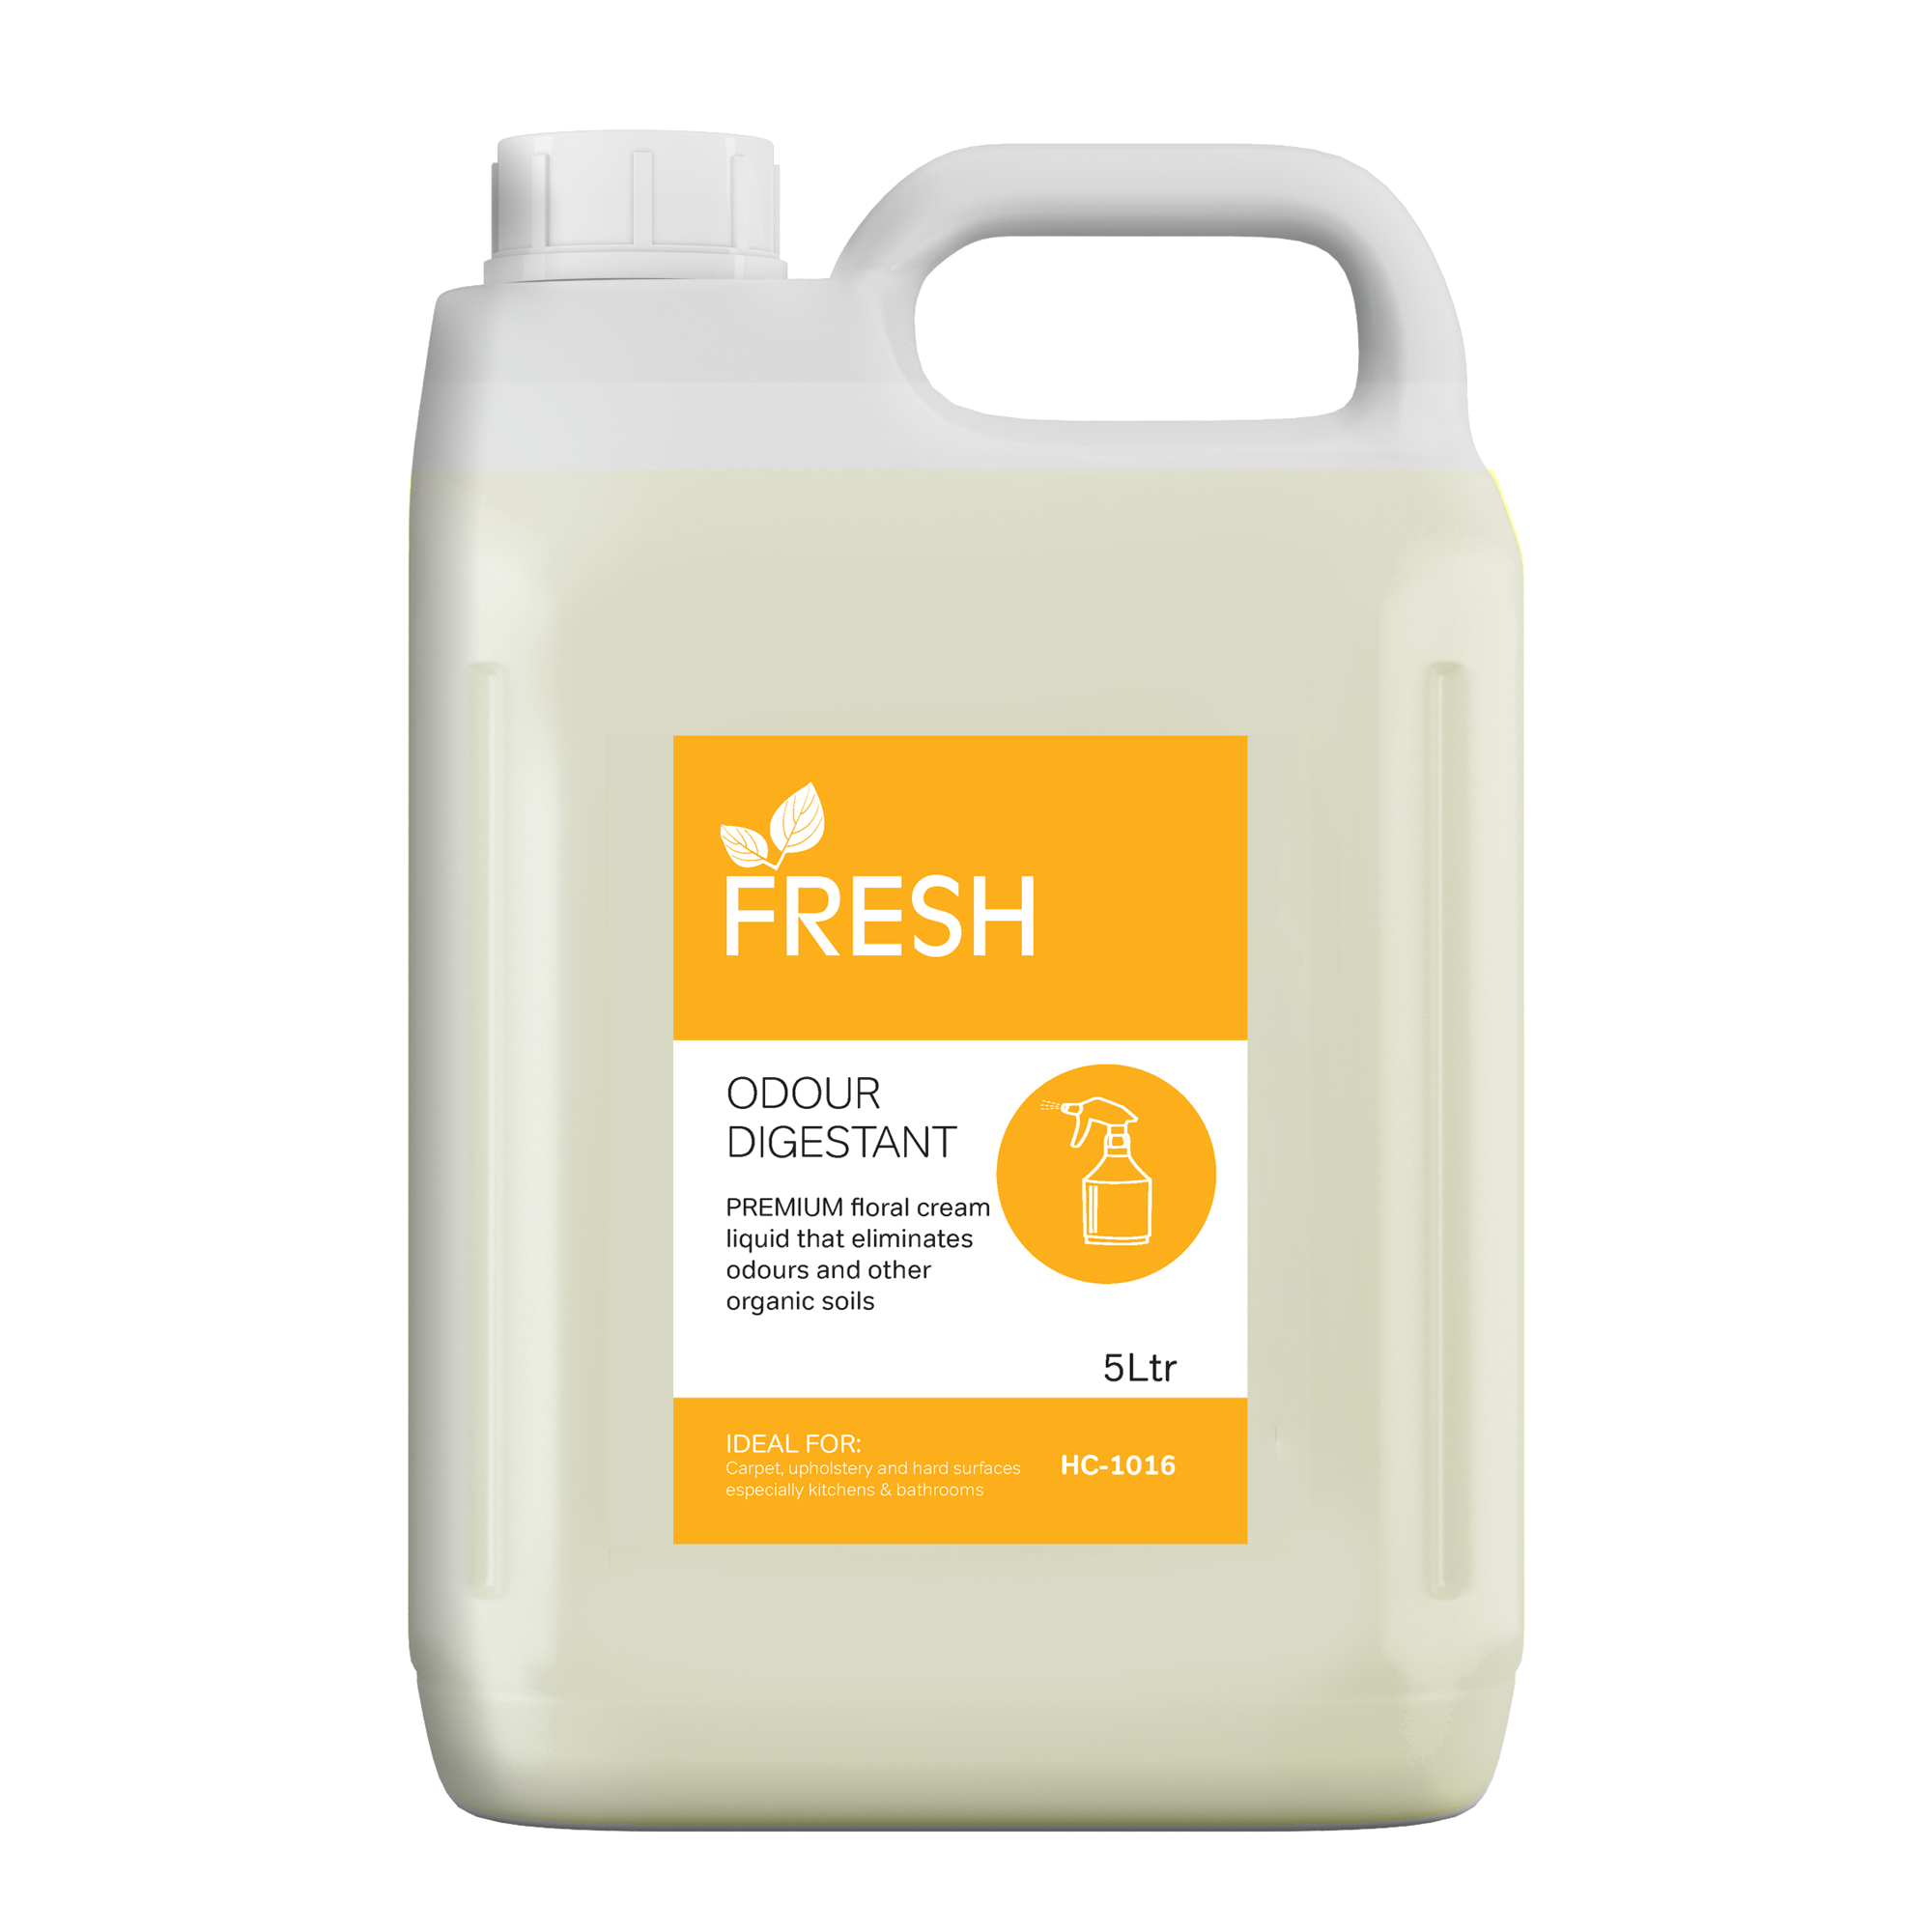 Fresh Odour Digestant 5Ltr - Each